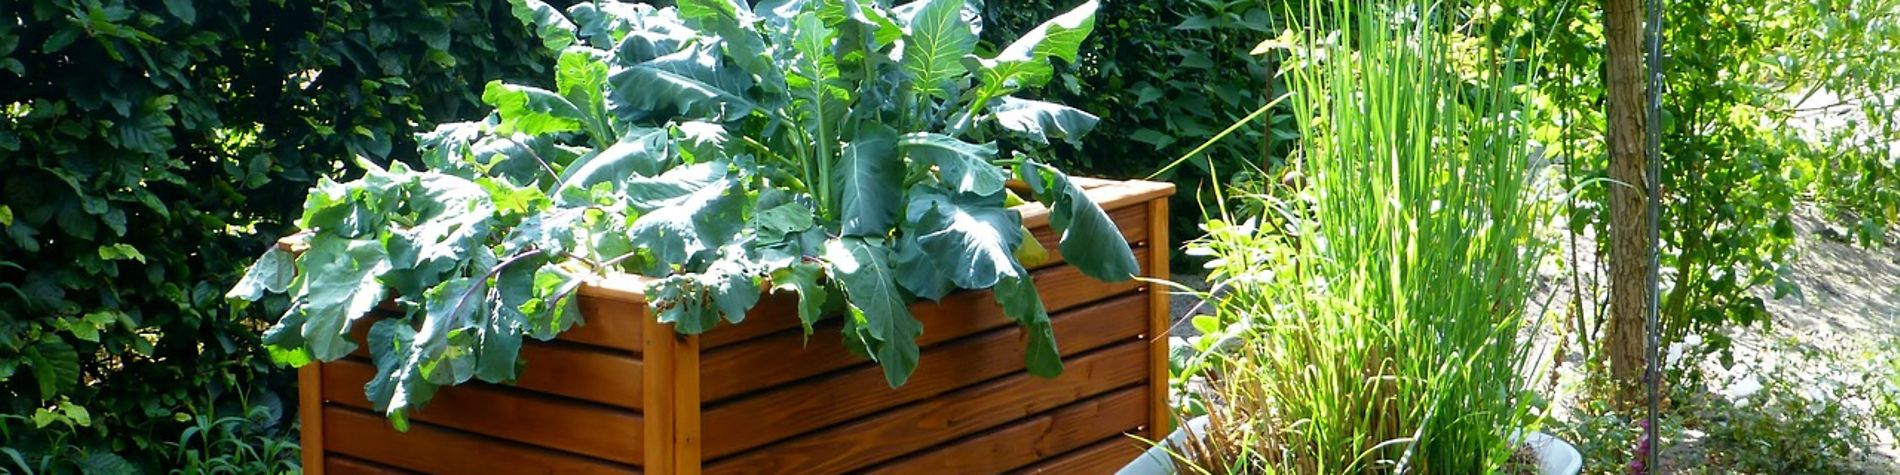 Hochbeet und Pflanzen in Schiebkarre gepflanzt